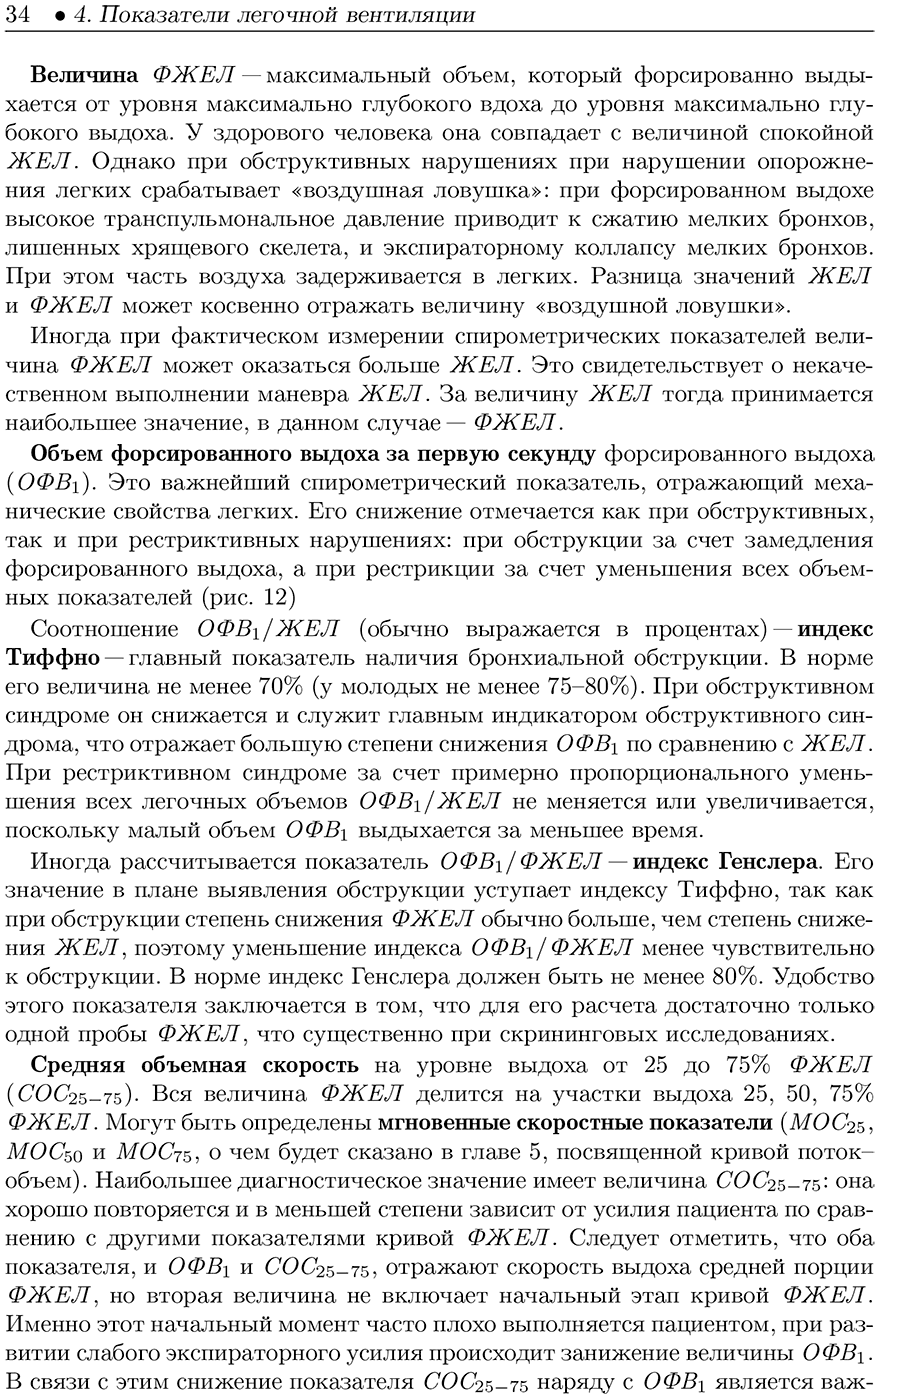 Примеры страниц из книги "Спирометрия руководство для врачей" - Стручков П. В.